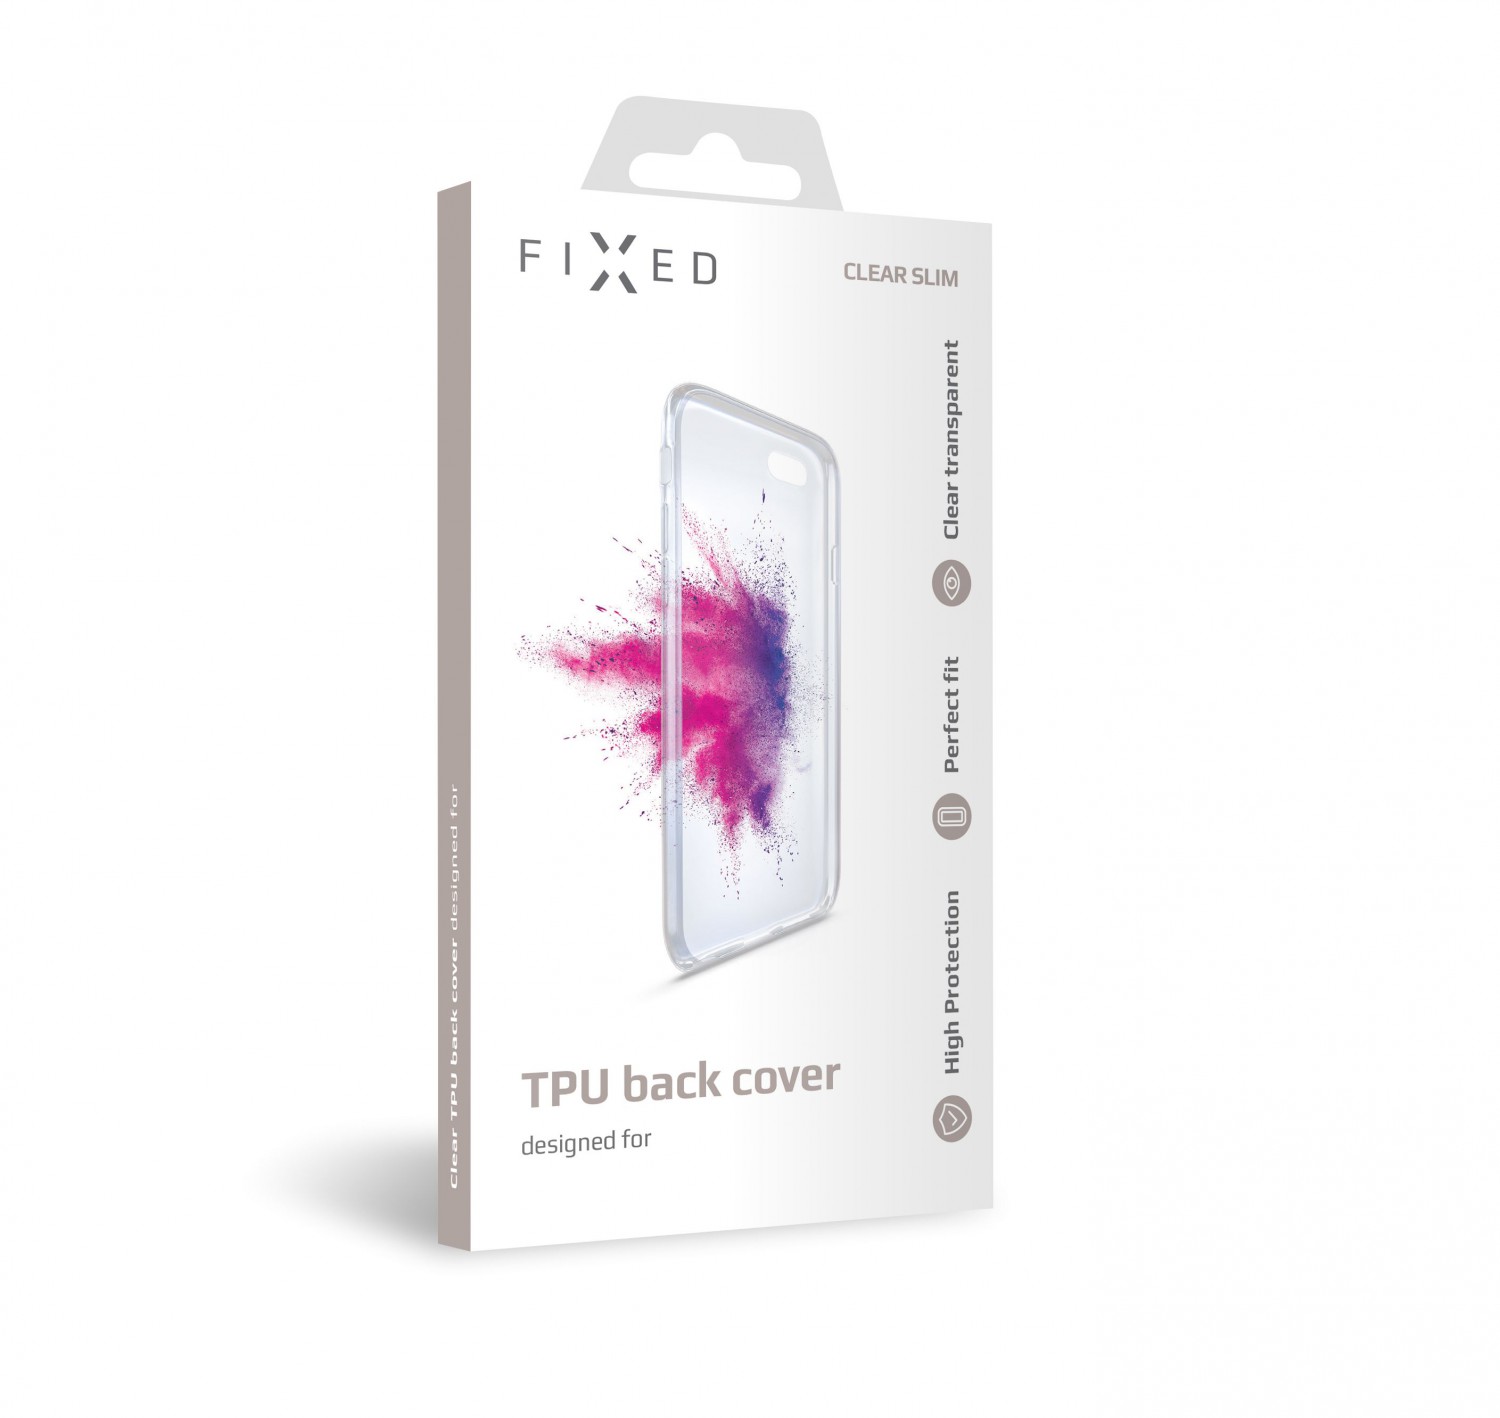 Silikonové pouzdro FIXED pro Asus Zenfone Max M2, čiré